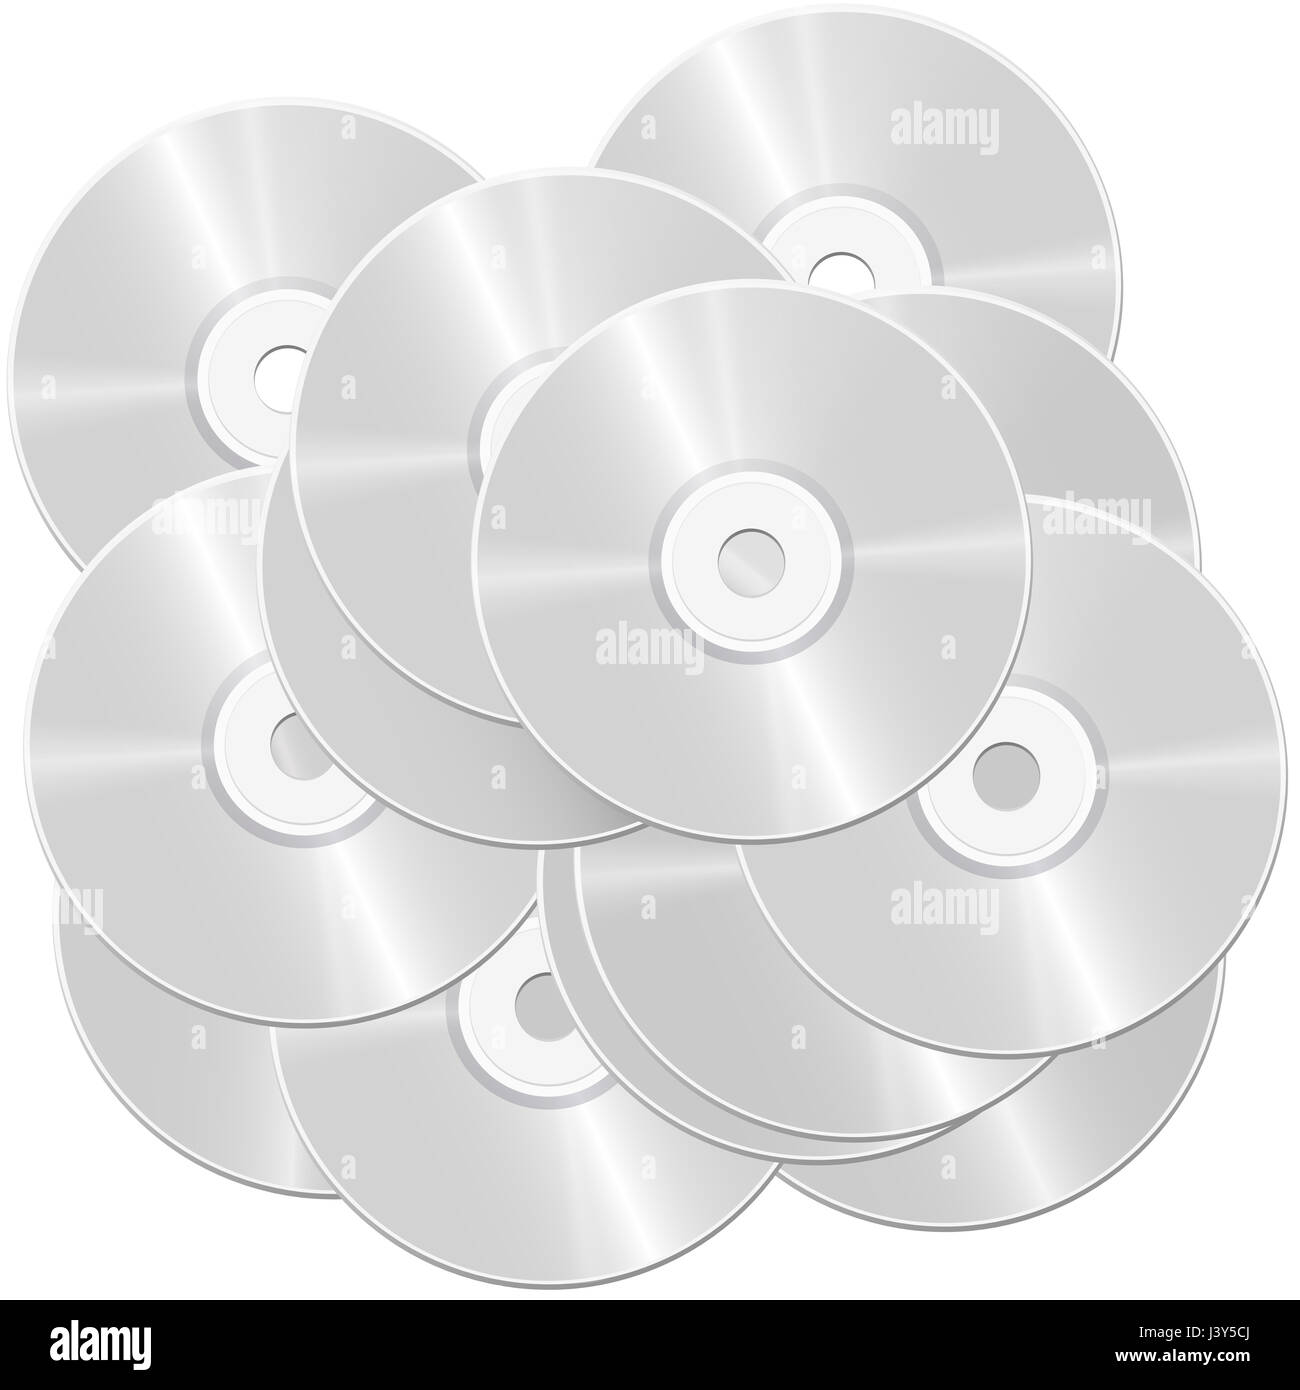 Montón de CD - montones de discos compactos o discos versátiles digitales - simbólico para grandes y masa de datos e información - Ilustración Foto de stock